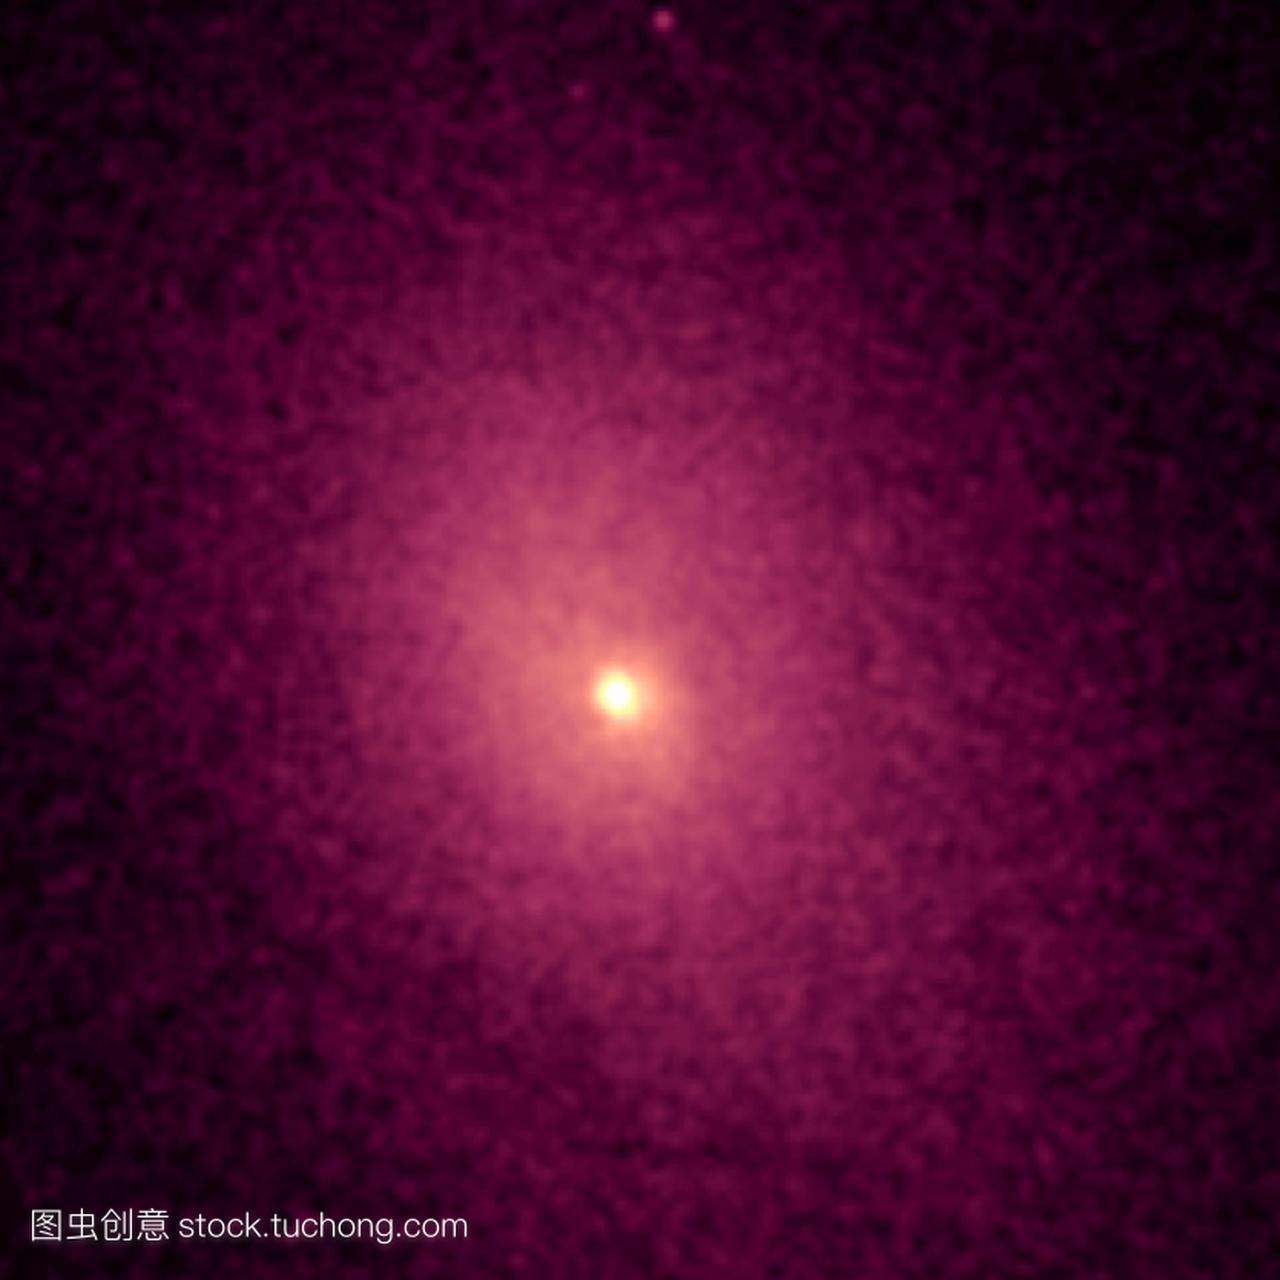 星系团。Abell2029星系的x射线图像位于距离地